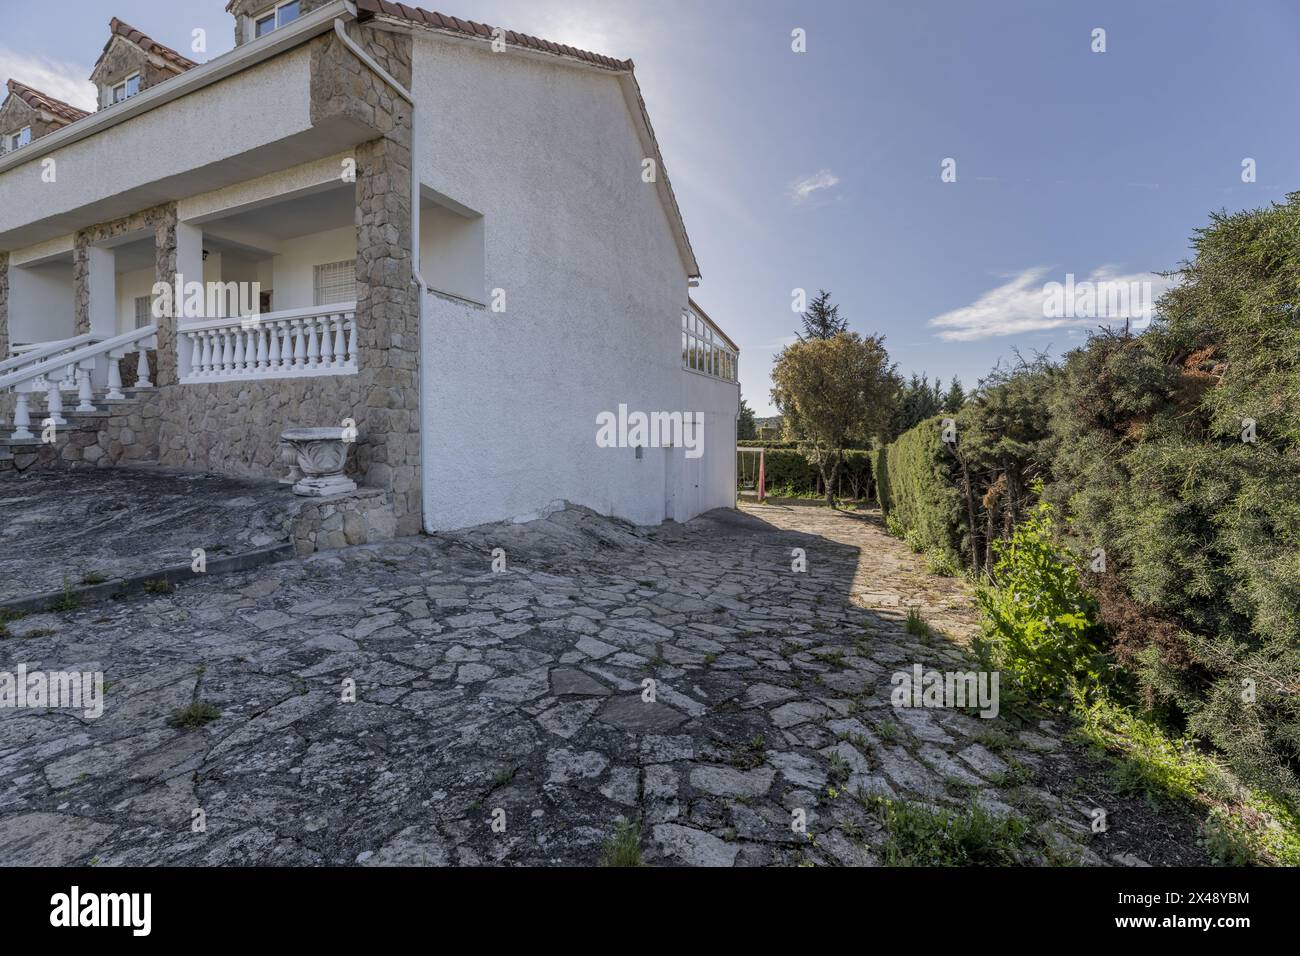 Una casa di campagna con facciate bianche, pavimenti in pietra sul terreno e siepi perimetrali Foto Stock